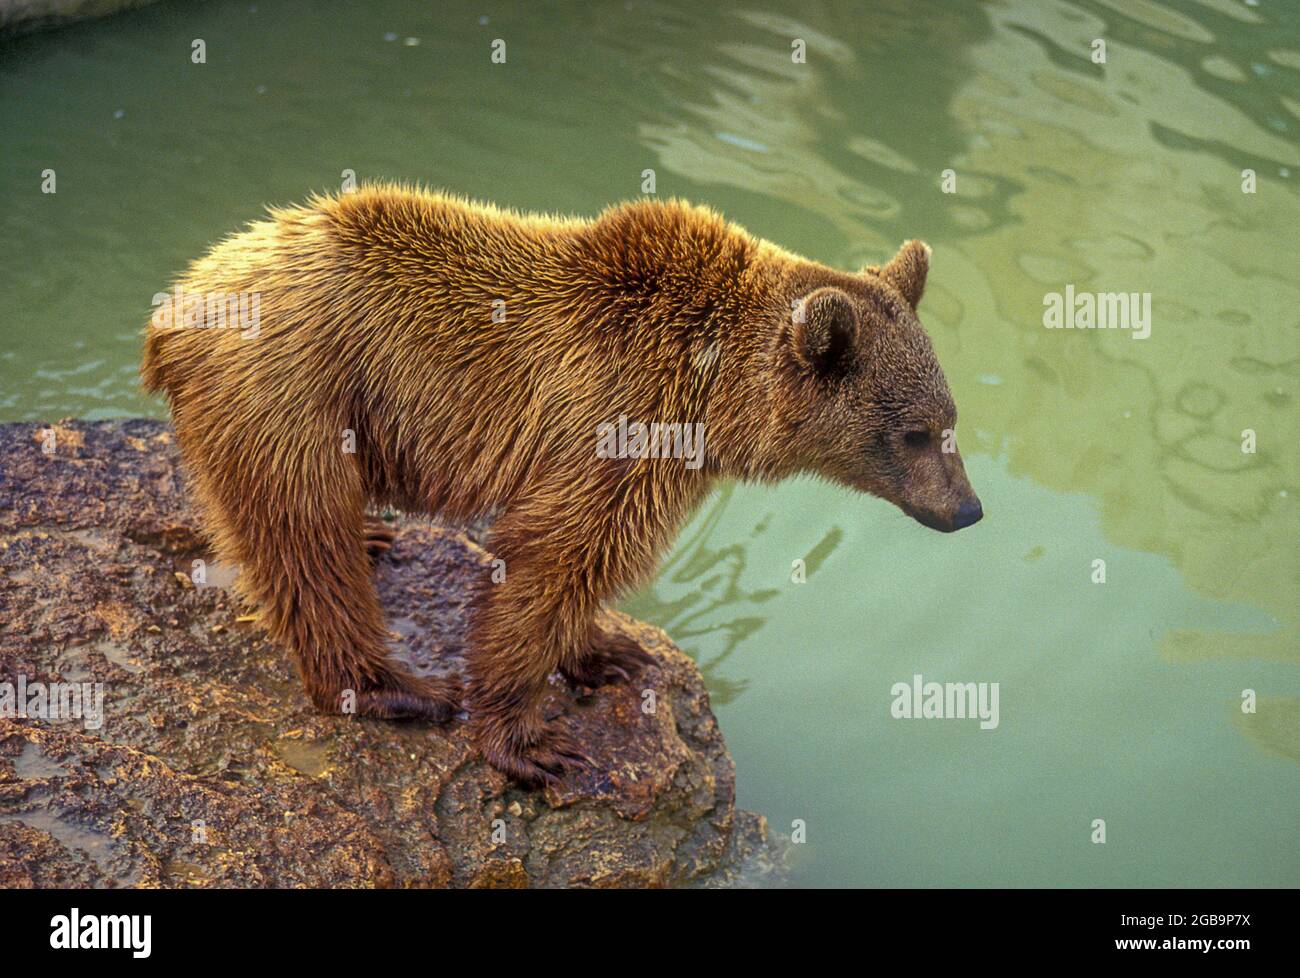 Der syrische Braunbär (Ursus arctos syriacus oder Ursus arctos arctos) ist eine relativ kleine Unterart des Braunbären, die im Nahen Osten und im Mittleren Osten beheimatet ist Stockfoto